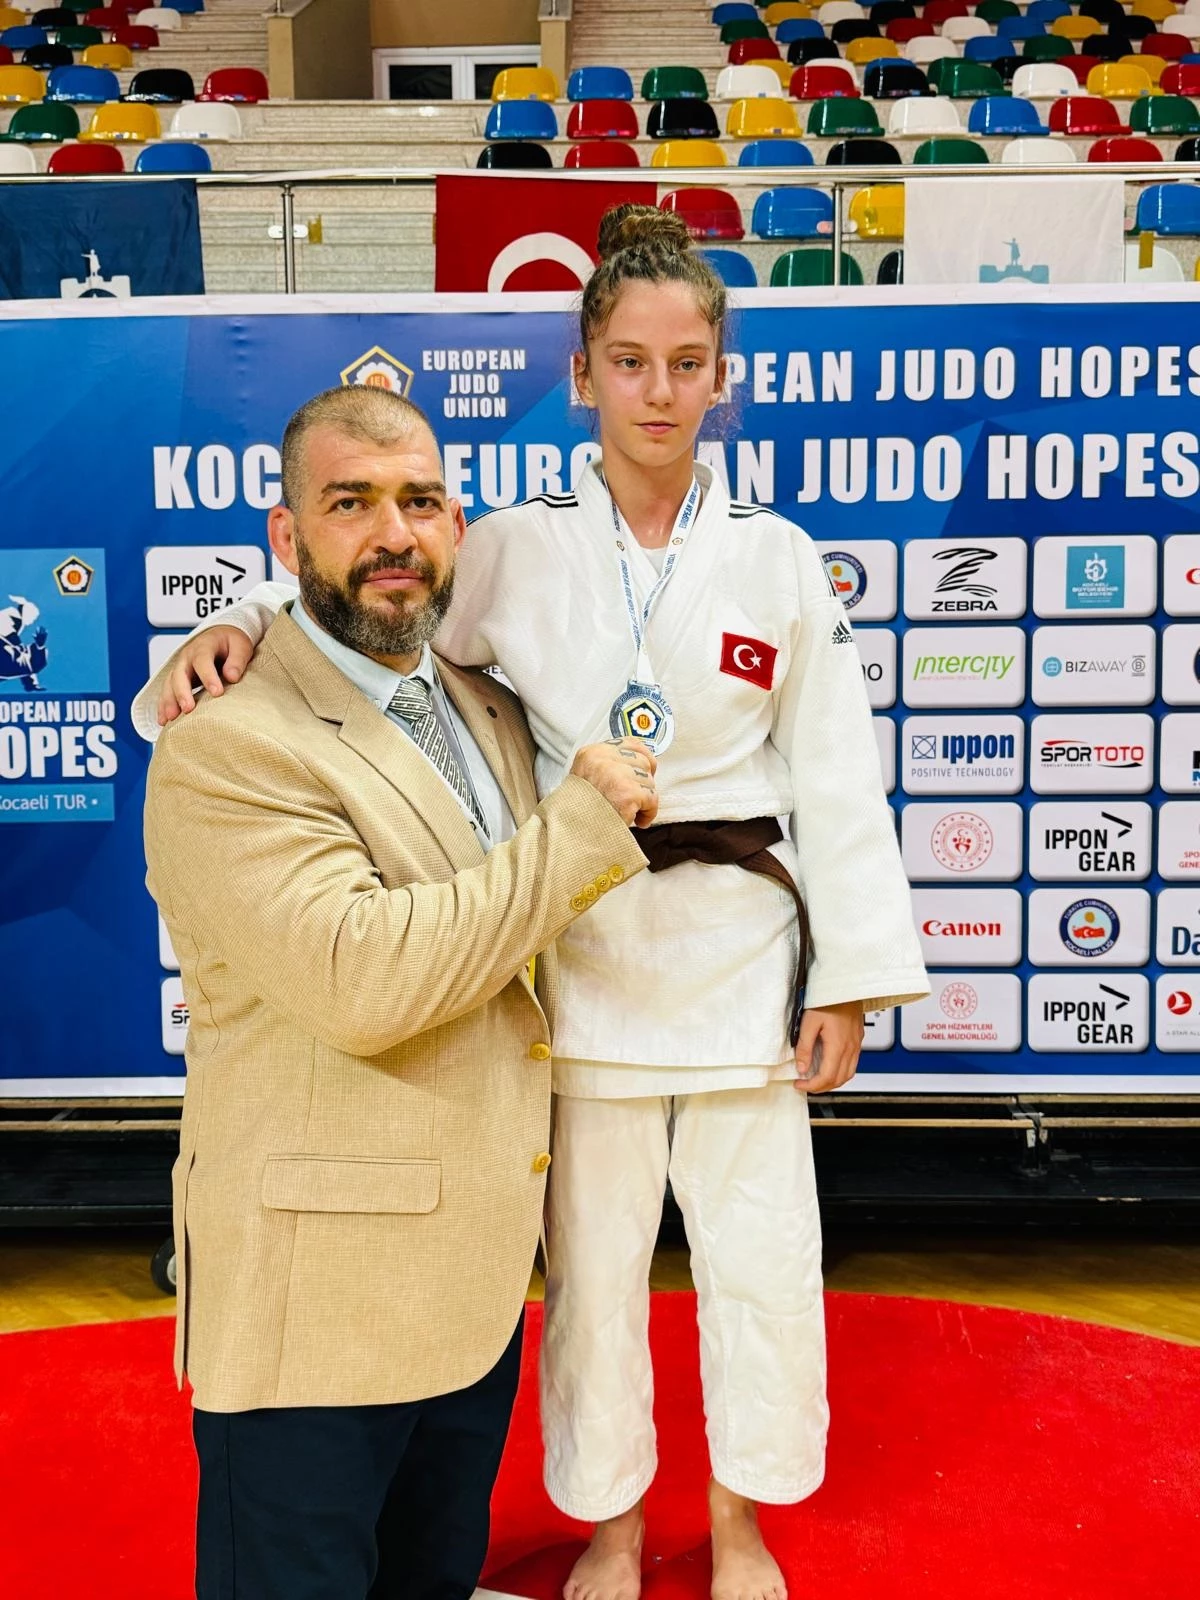 İzmir Büyükşehir Belediyesi Spor Kulübü judocusu Ekin İtmeç, Judo Yıldızlar Avrupa Kupası’nda ikincilik elde etti